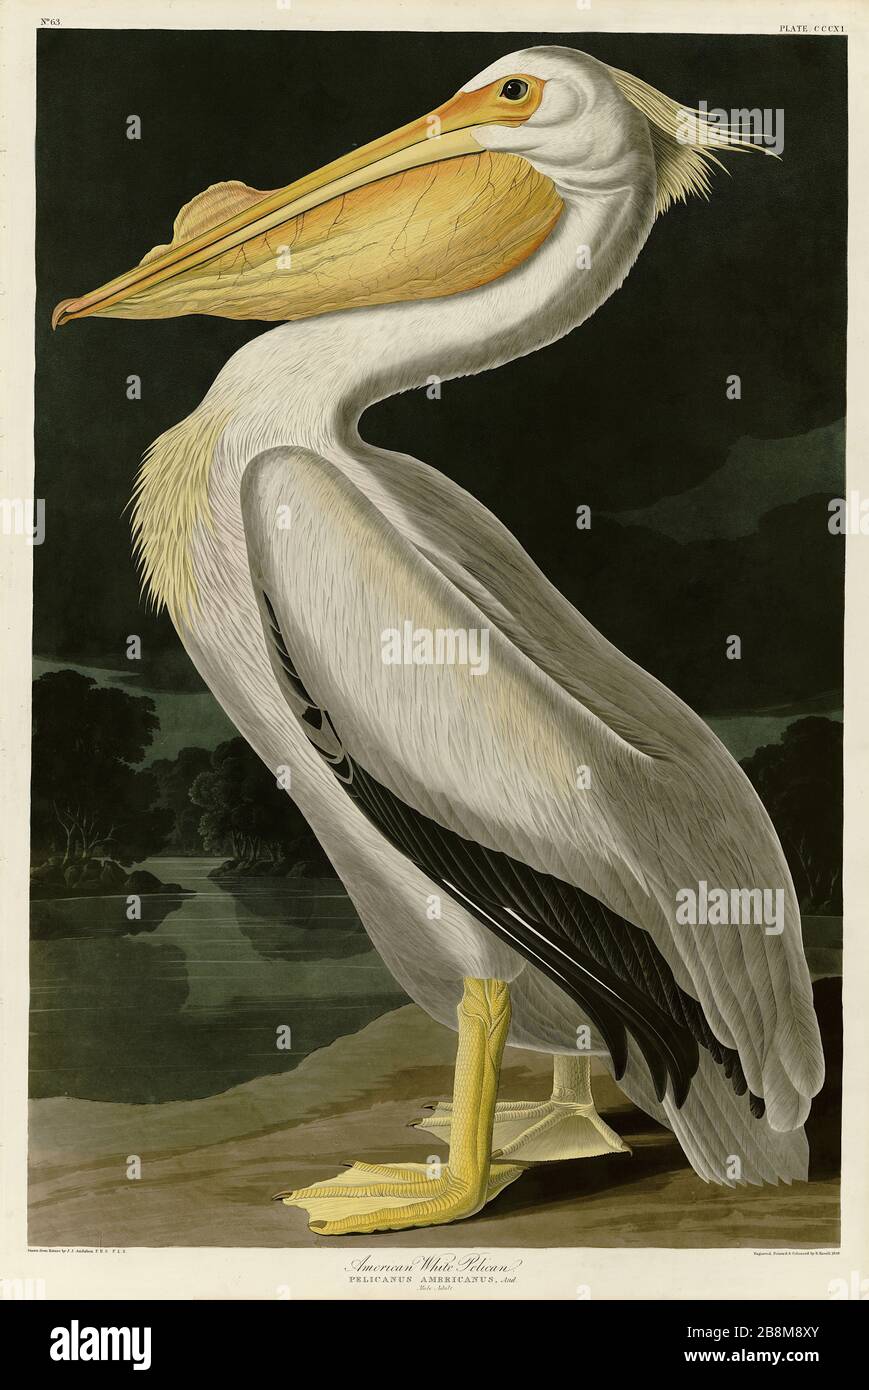 Platte 311 American White Pelican, von The Birds of America Folio (1821-18329) von John James Audubon - sehr hohe Auflösung und Qualität bearbeitetes Bild Stockfoto